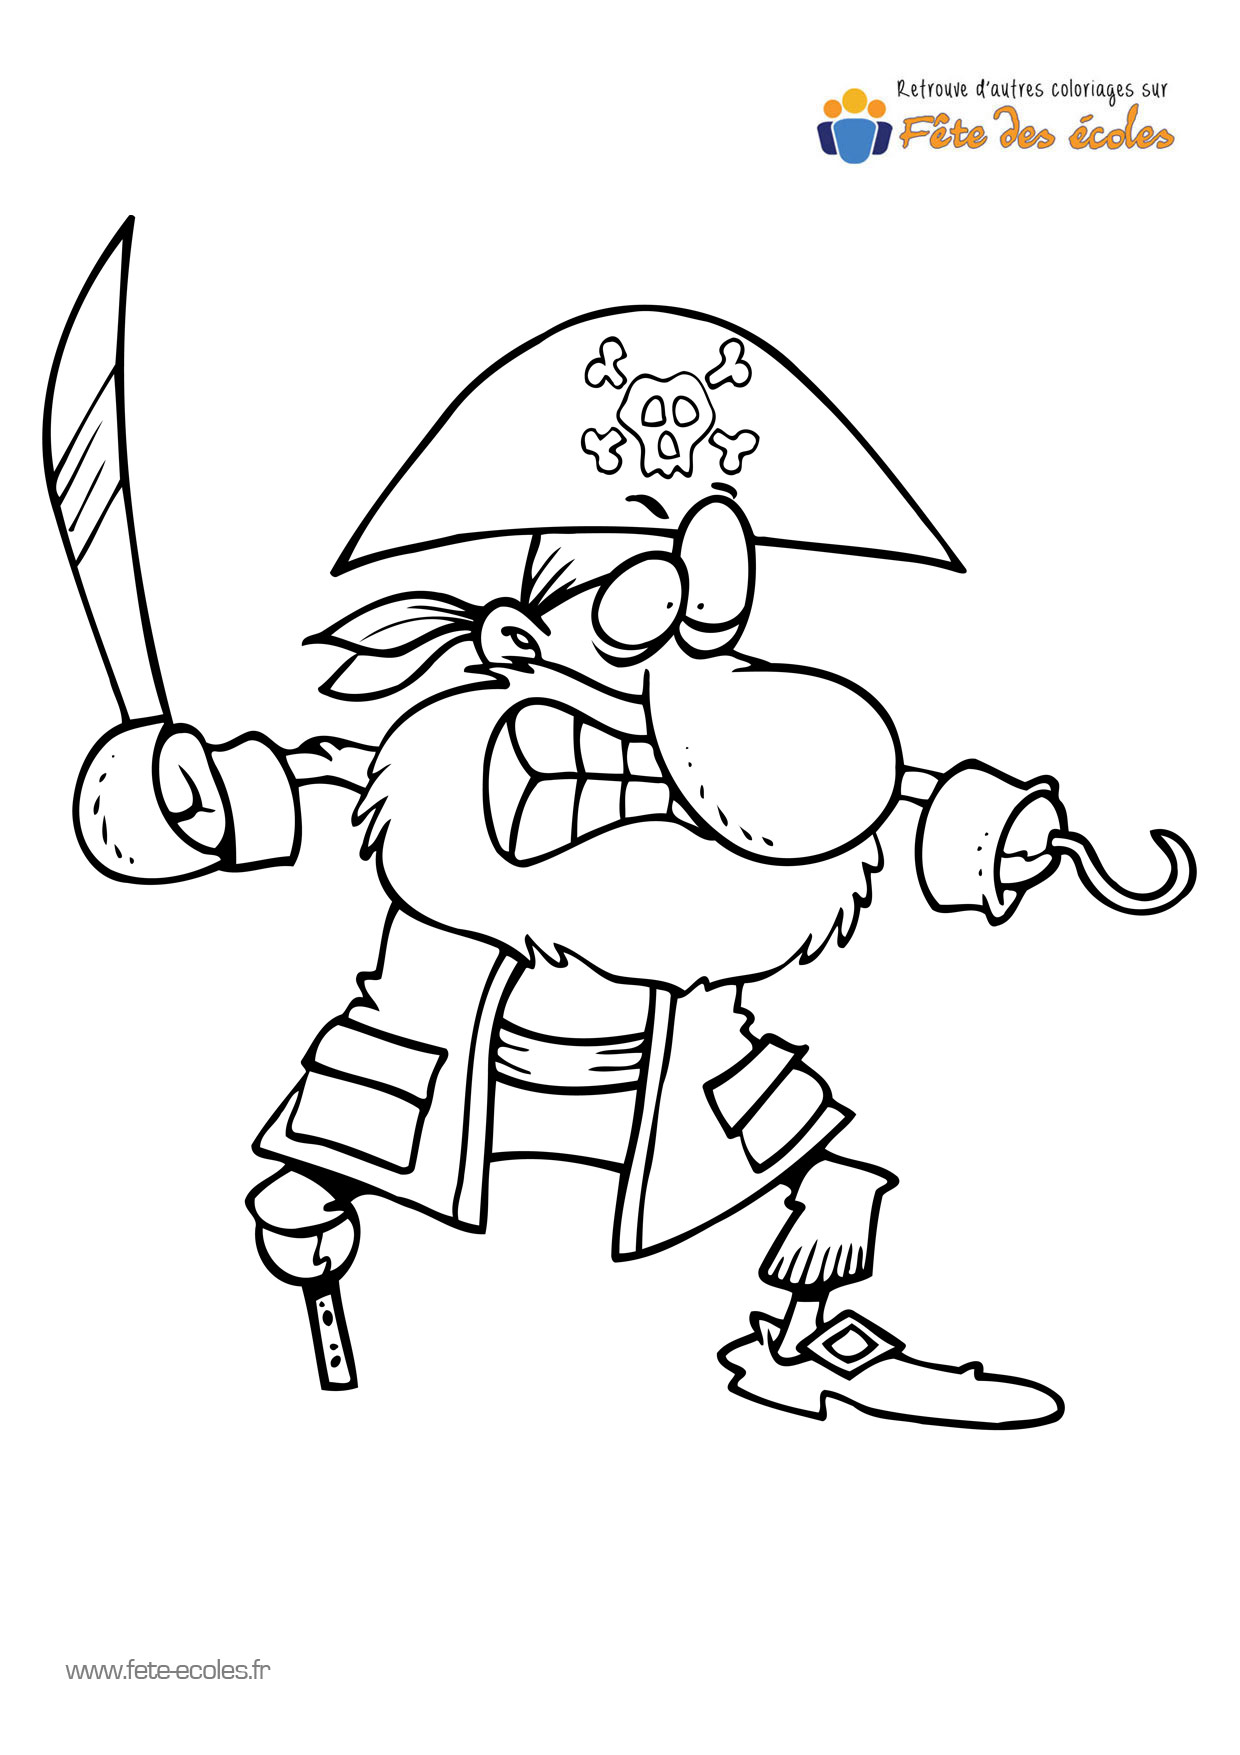 Coloriage d'un pirate avec un crochet et une jambe de bois